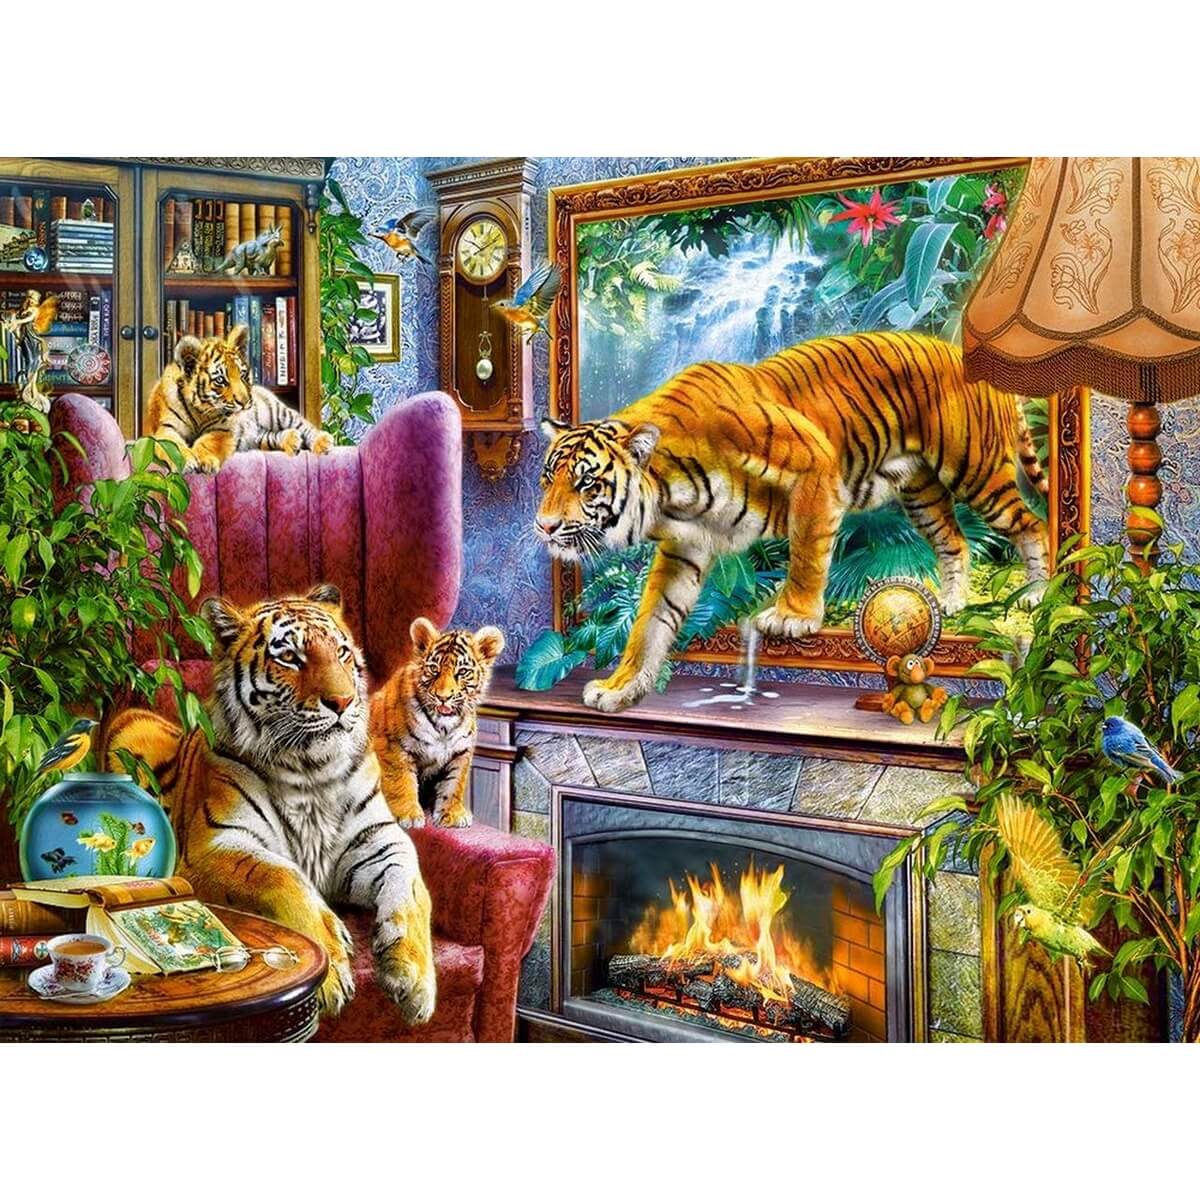 Puzzle 3000 pieces Les tigres dans la maison 92x68cm de marque Castorland 